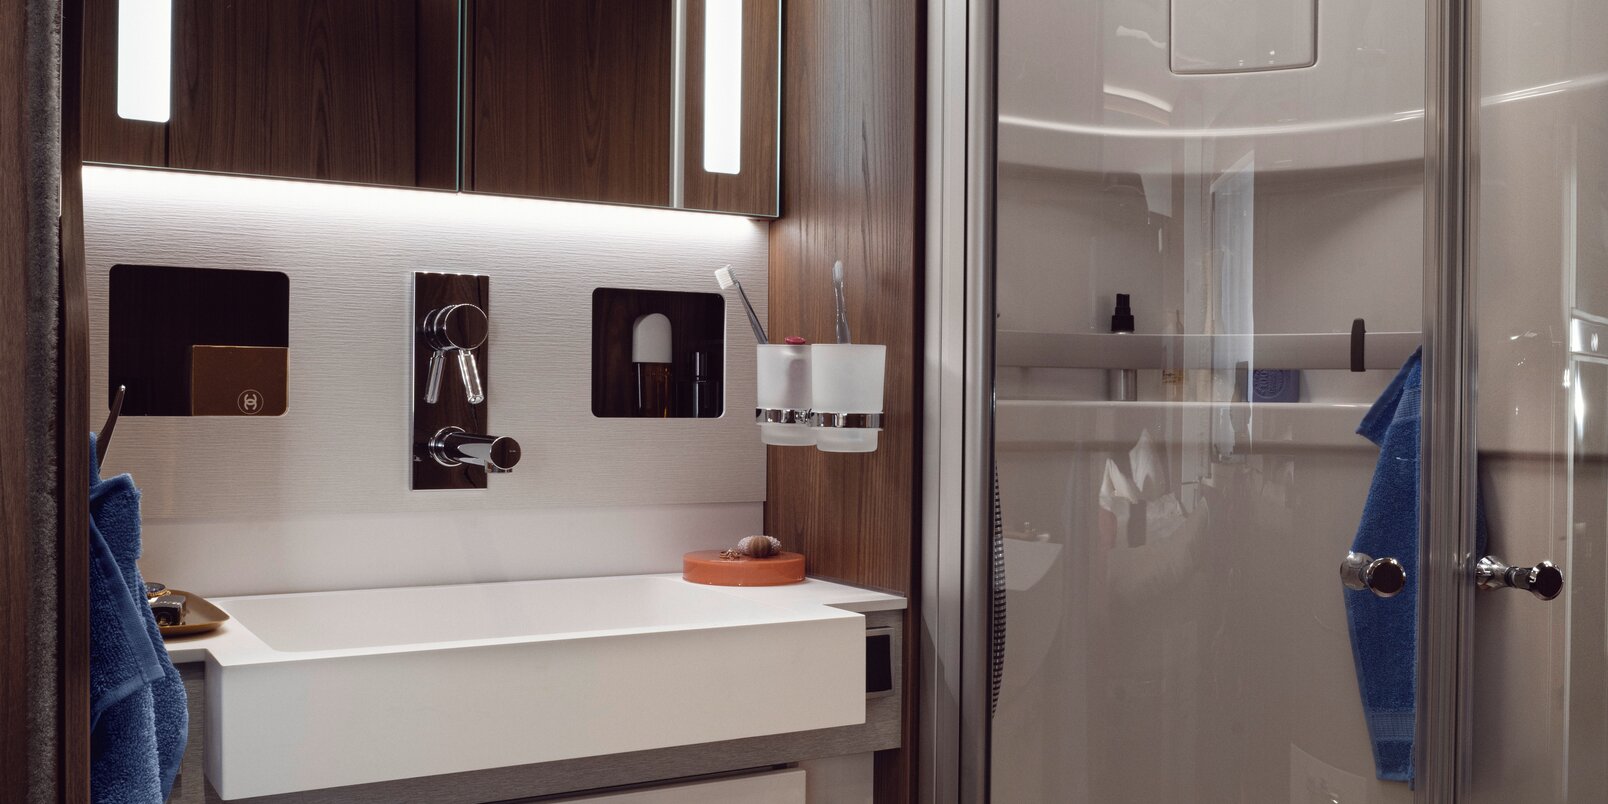 HYMER B-ML I 890:n ylellinen kylpyhuone: valaistu peilikaappi, säilytystilaa pesualtaan alla sekä erillinen suihku lasiovilla